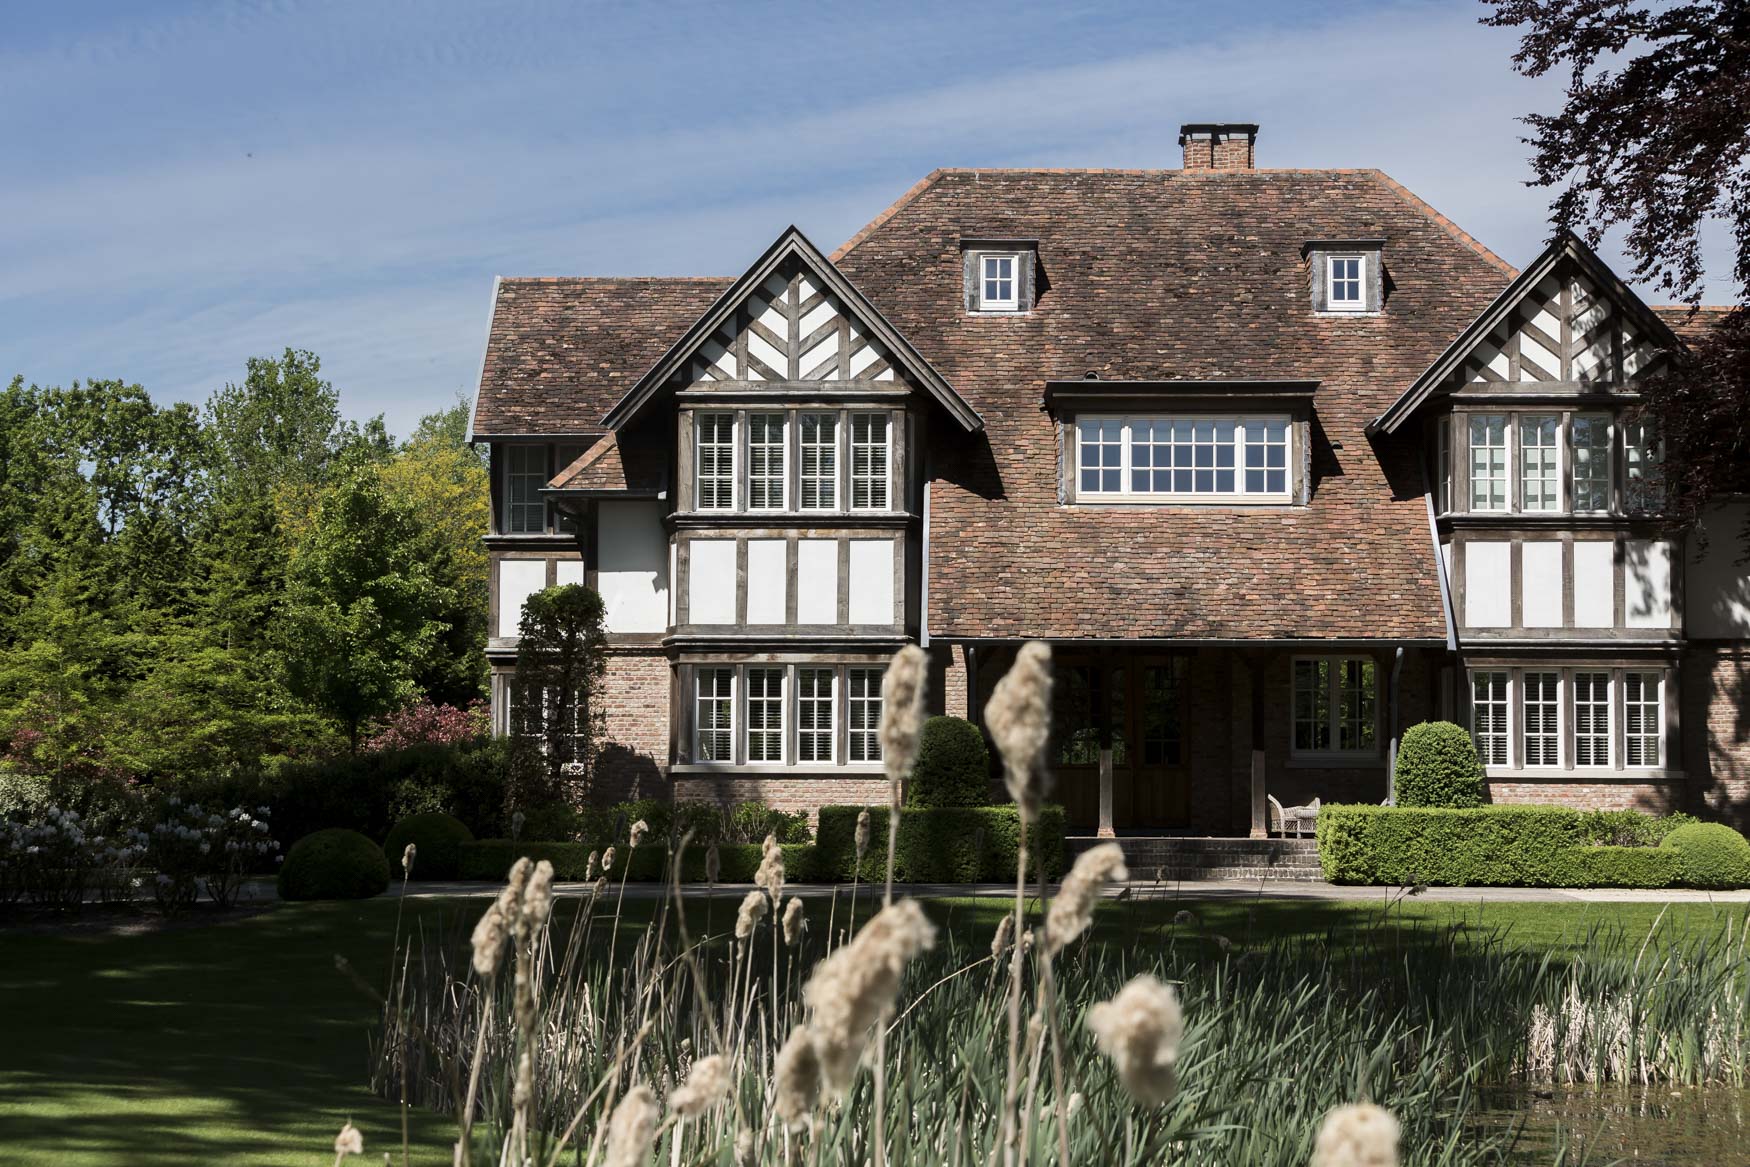 Een huis in Tudorstijl met houten balken en bakstenen muren staat te midden van weelderig groen. Hoge grassen wiegen in de voorgrond, wat diepte toevoegt aan de serene omgeving.